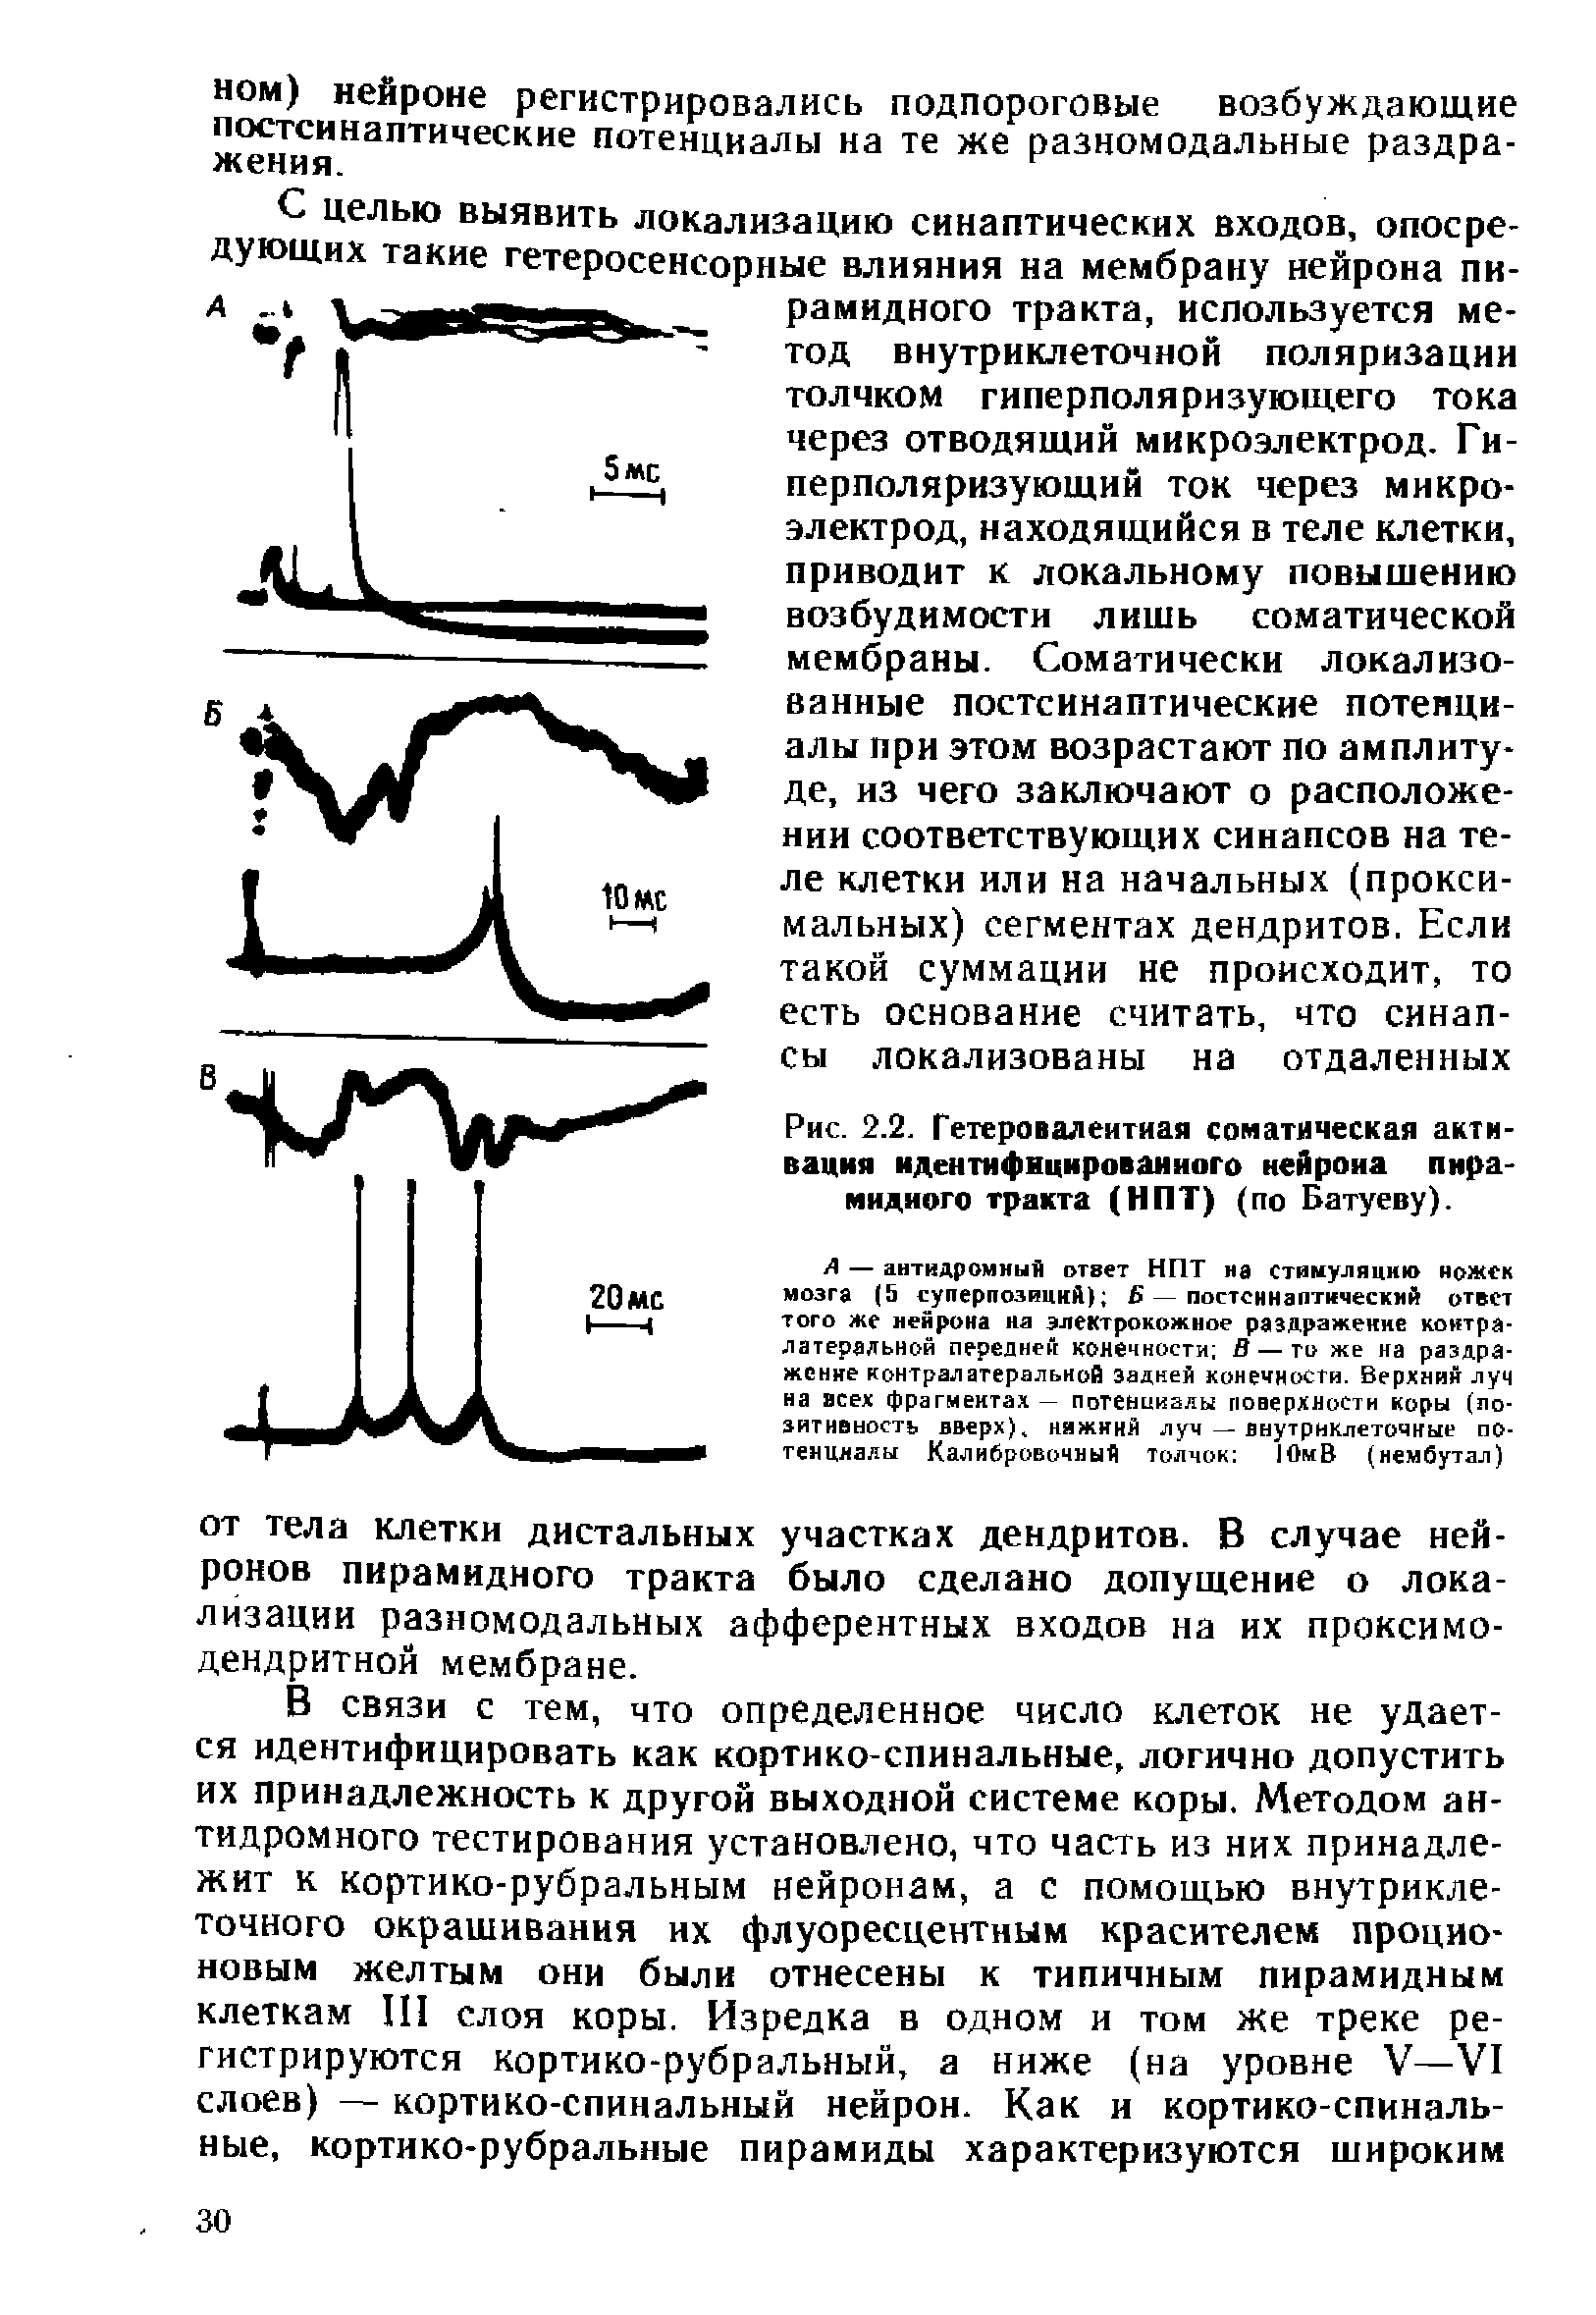 Рис. 2.2. Гетеро валентная соматическая активация идентифицированного нейрона пирамидного тракта (НПТ) (по Батуеву).